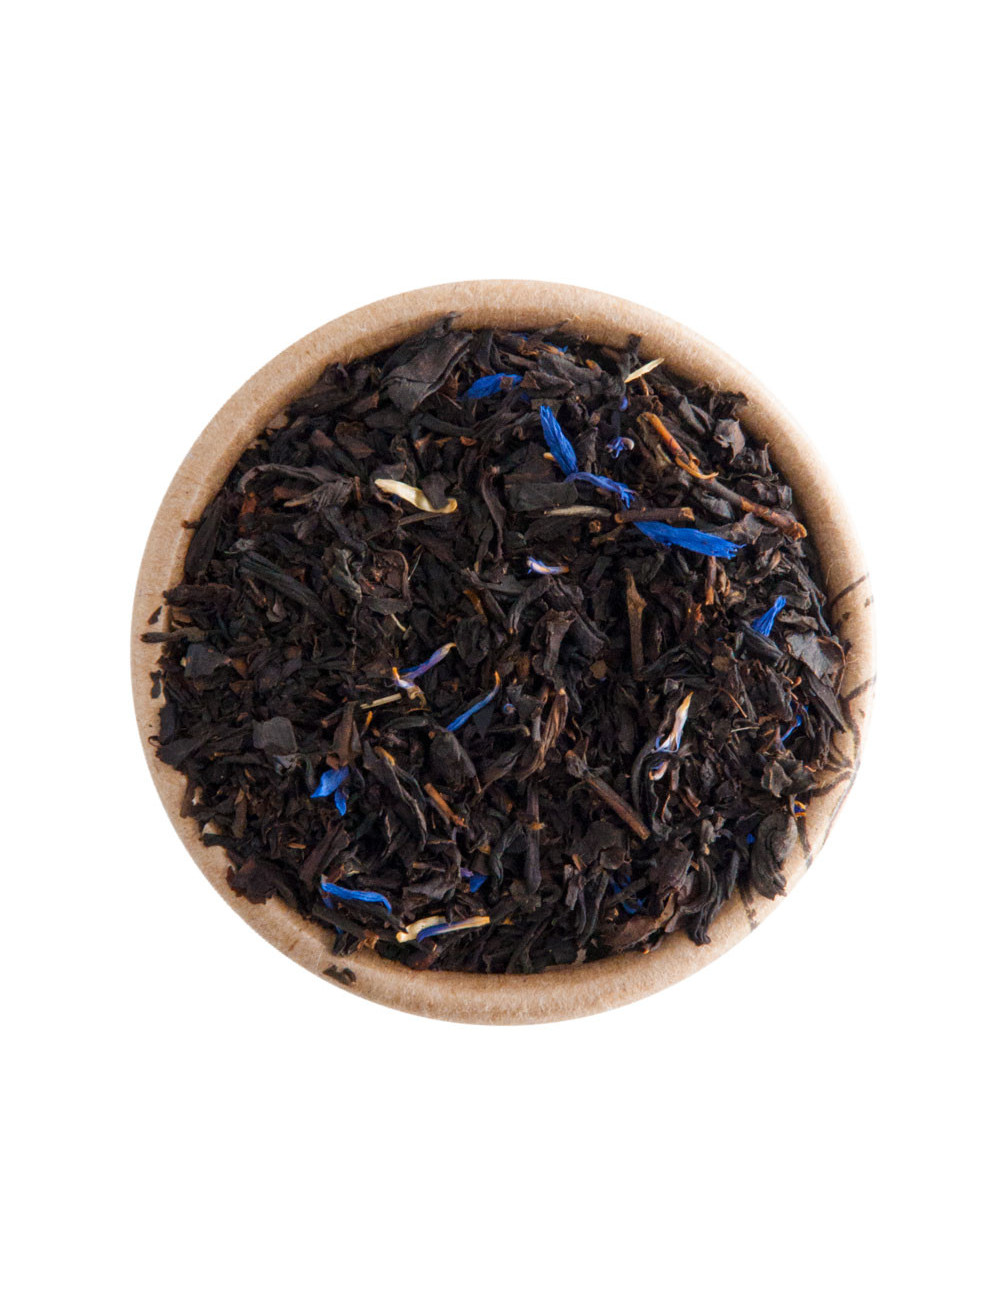 Violetta tè nero aromatizzato - La Pianta del Tè shop online